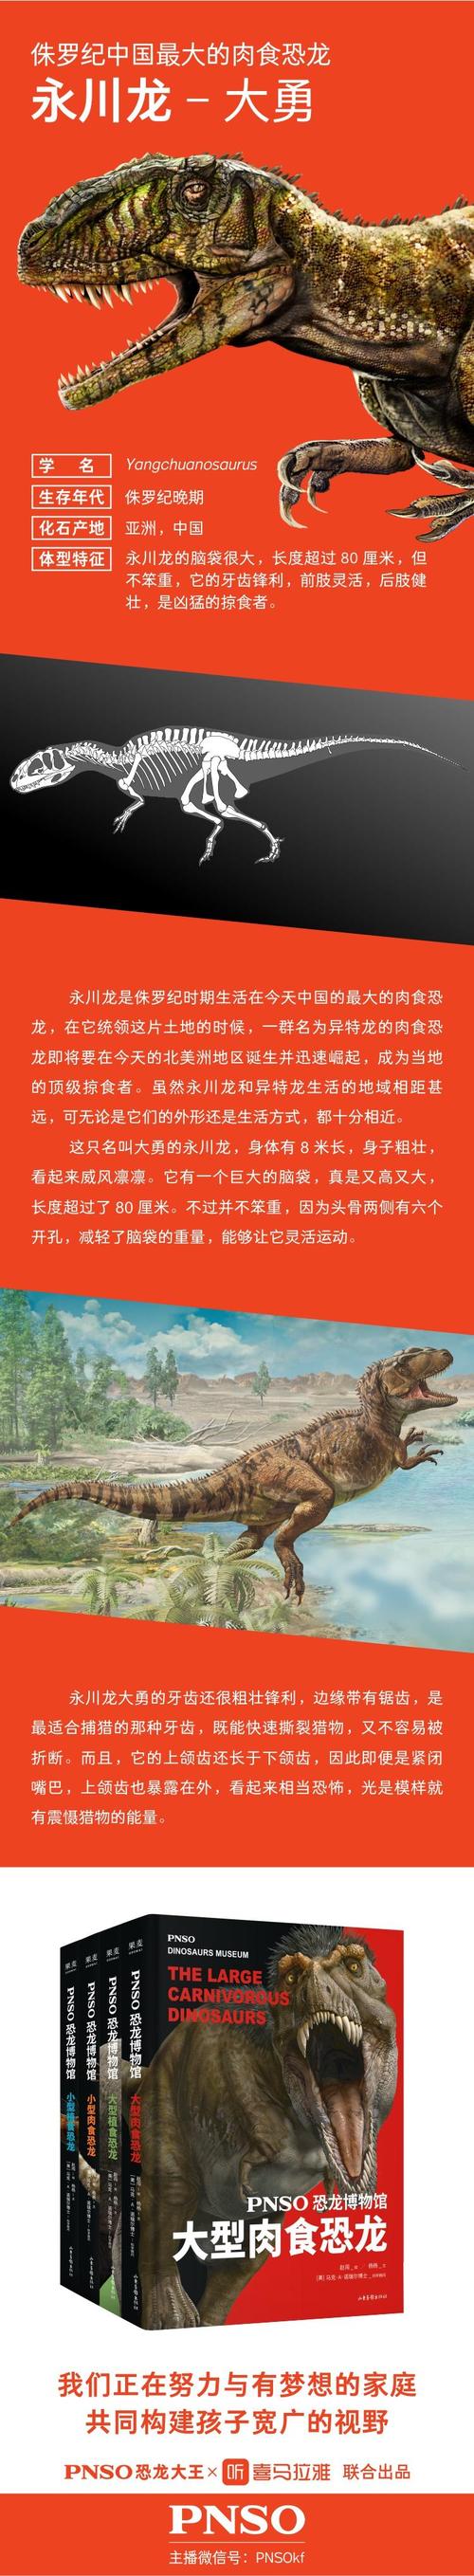 侏罗纪中国最大的肉食恐龙-永川龙大勇